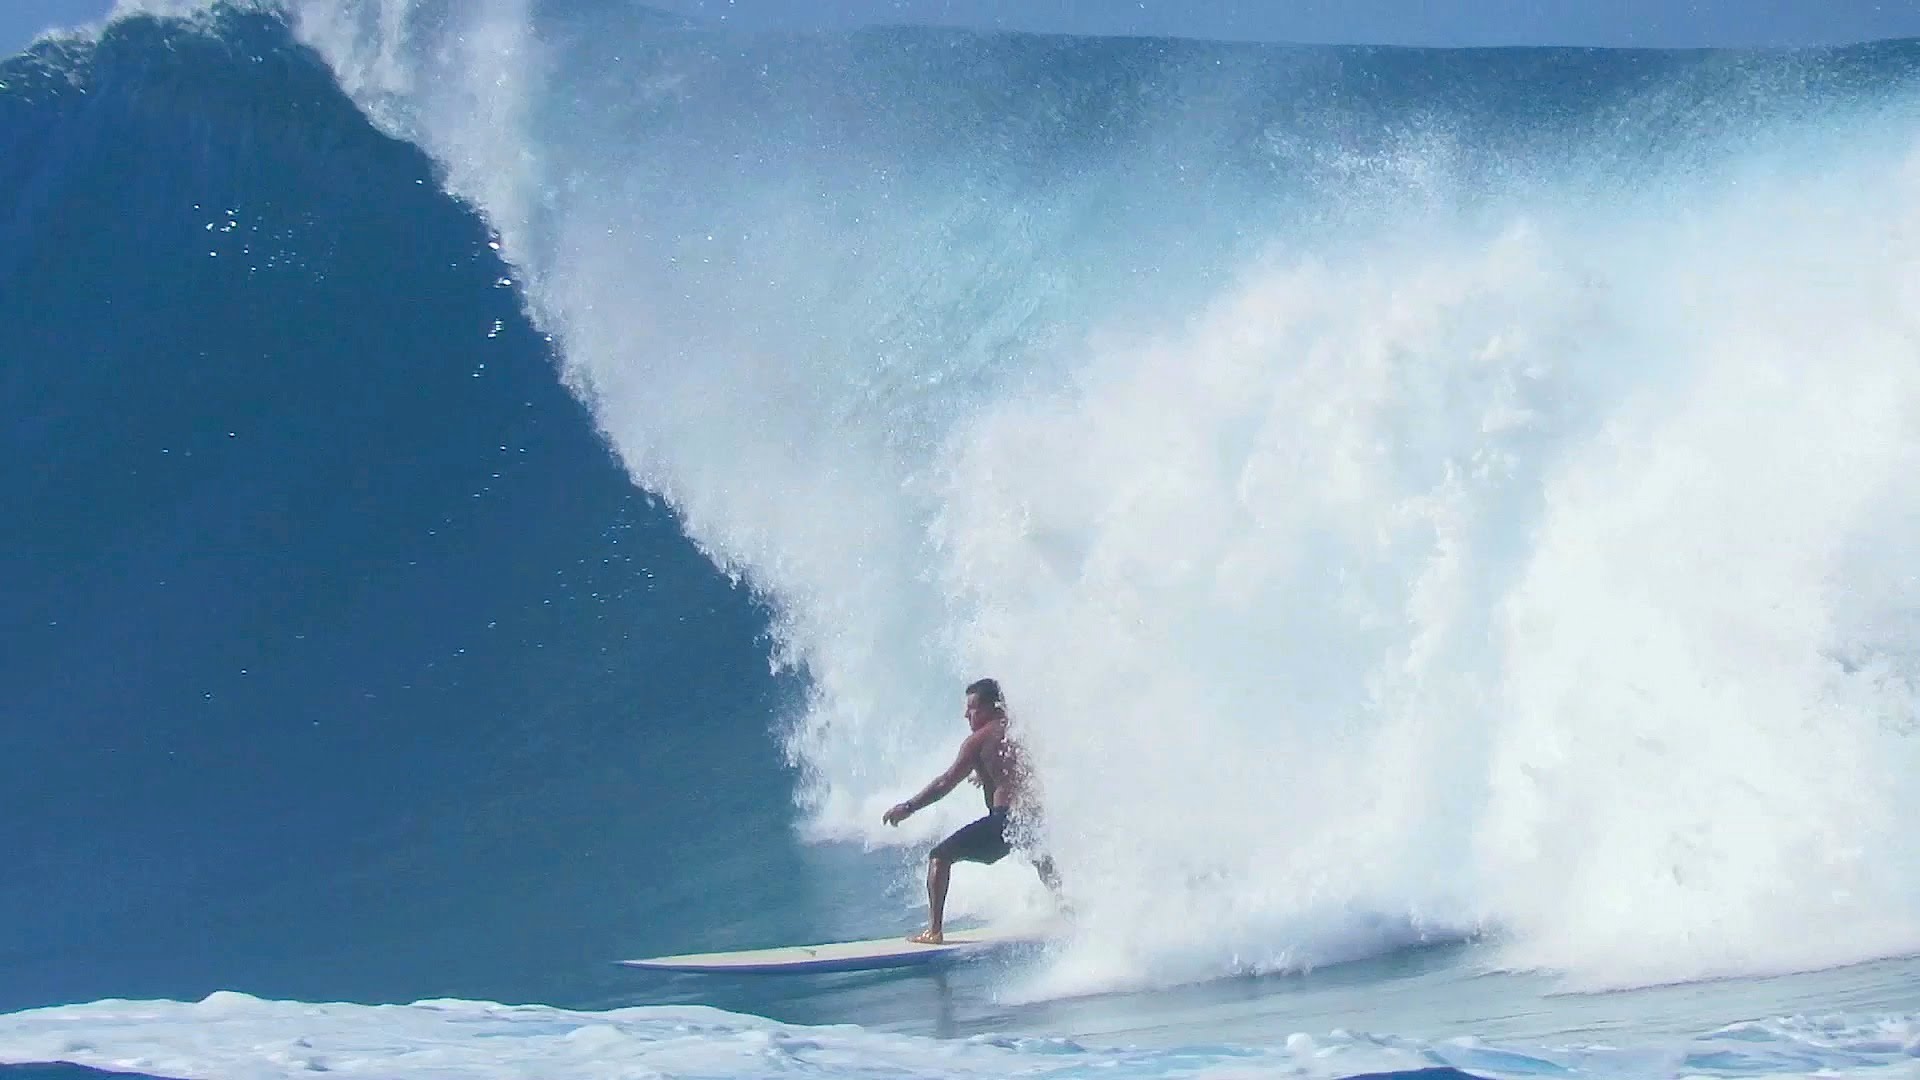 Makaha | Surfing in Hawaii - YouTube